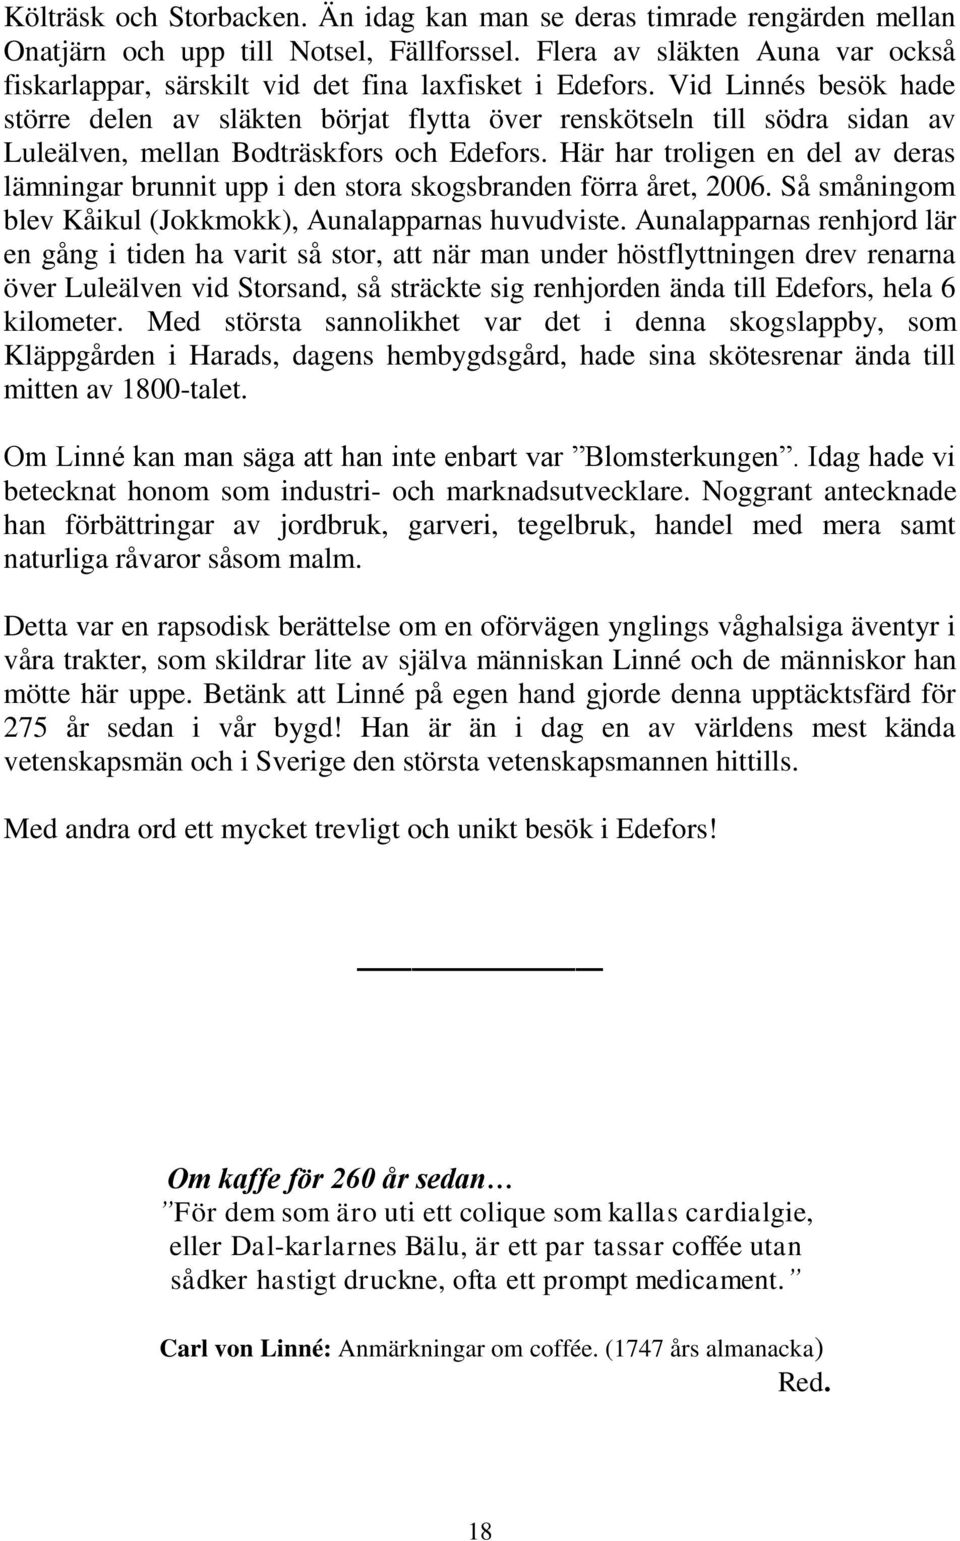 Vid Linnés besök hade större delen av släkten börjat flytta över renskötseln till södra sidan av Luleälven, mellan Bodträskfors och Edefors.